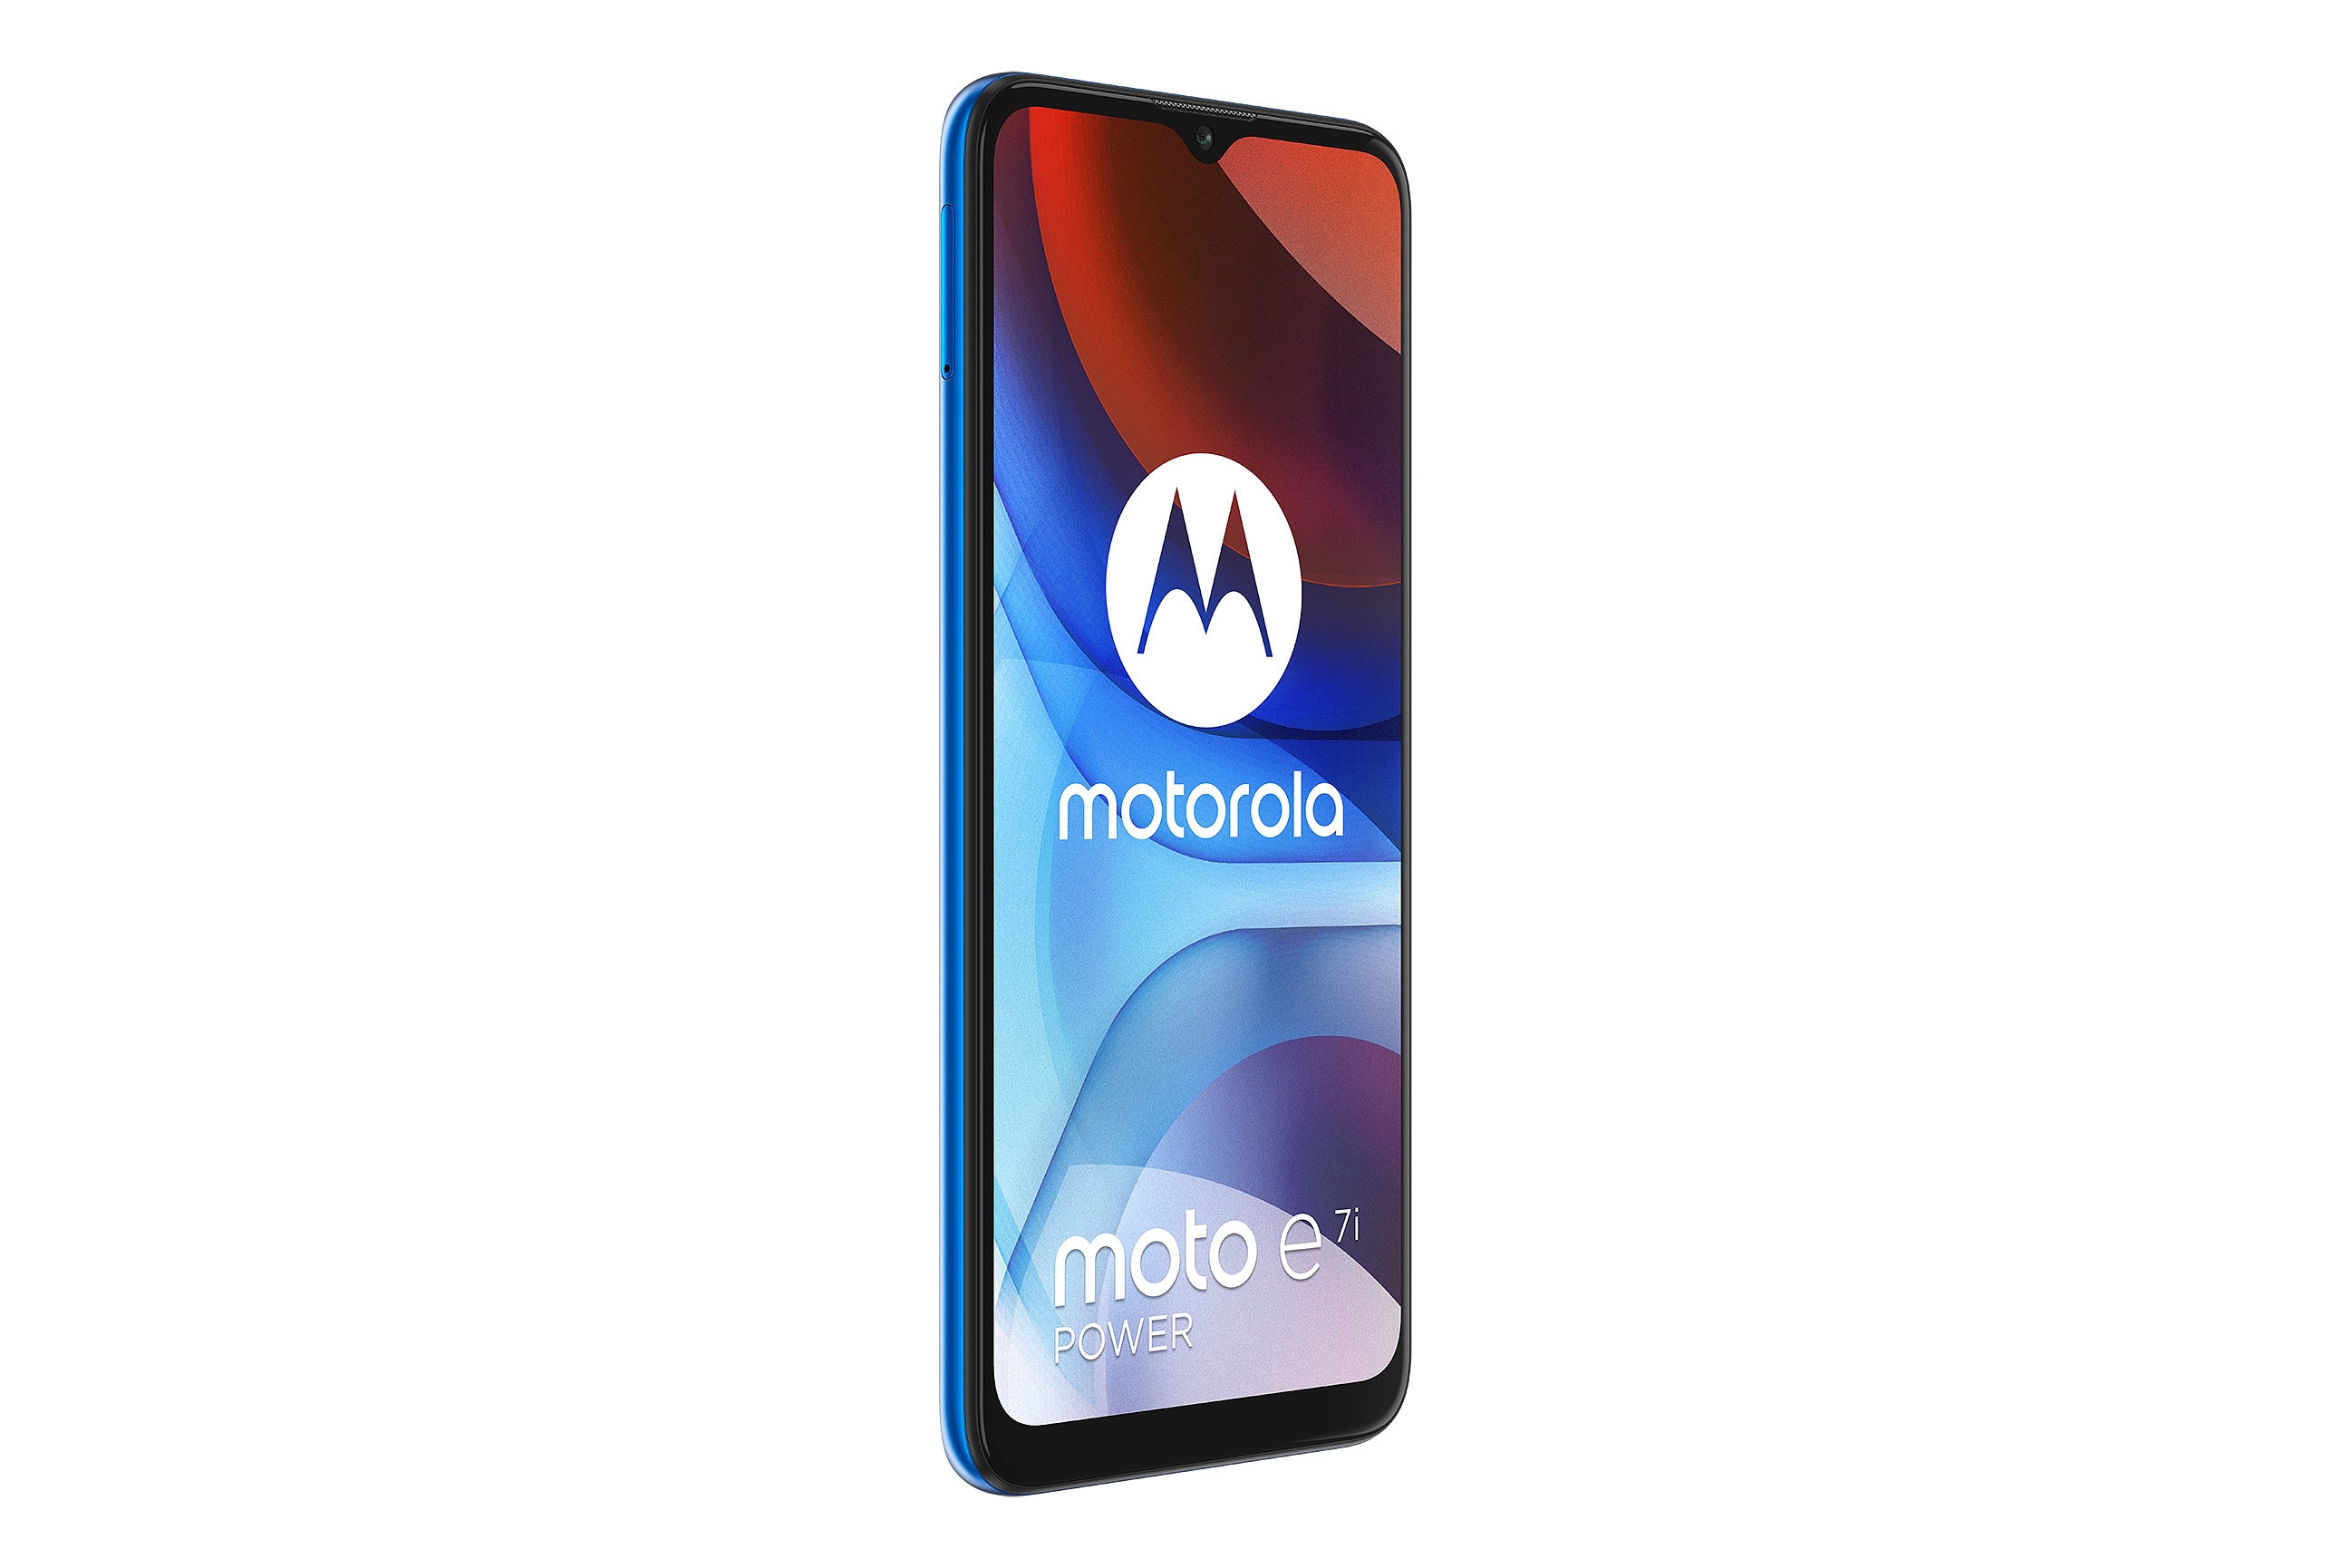 نمای چپ پنل جلو گوشی موبایل موتو ای 7i پاور موتورولا / Motorola Moto E7i Power